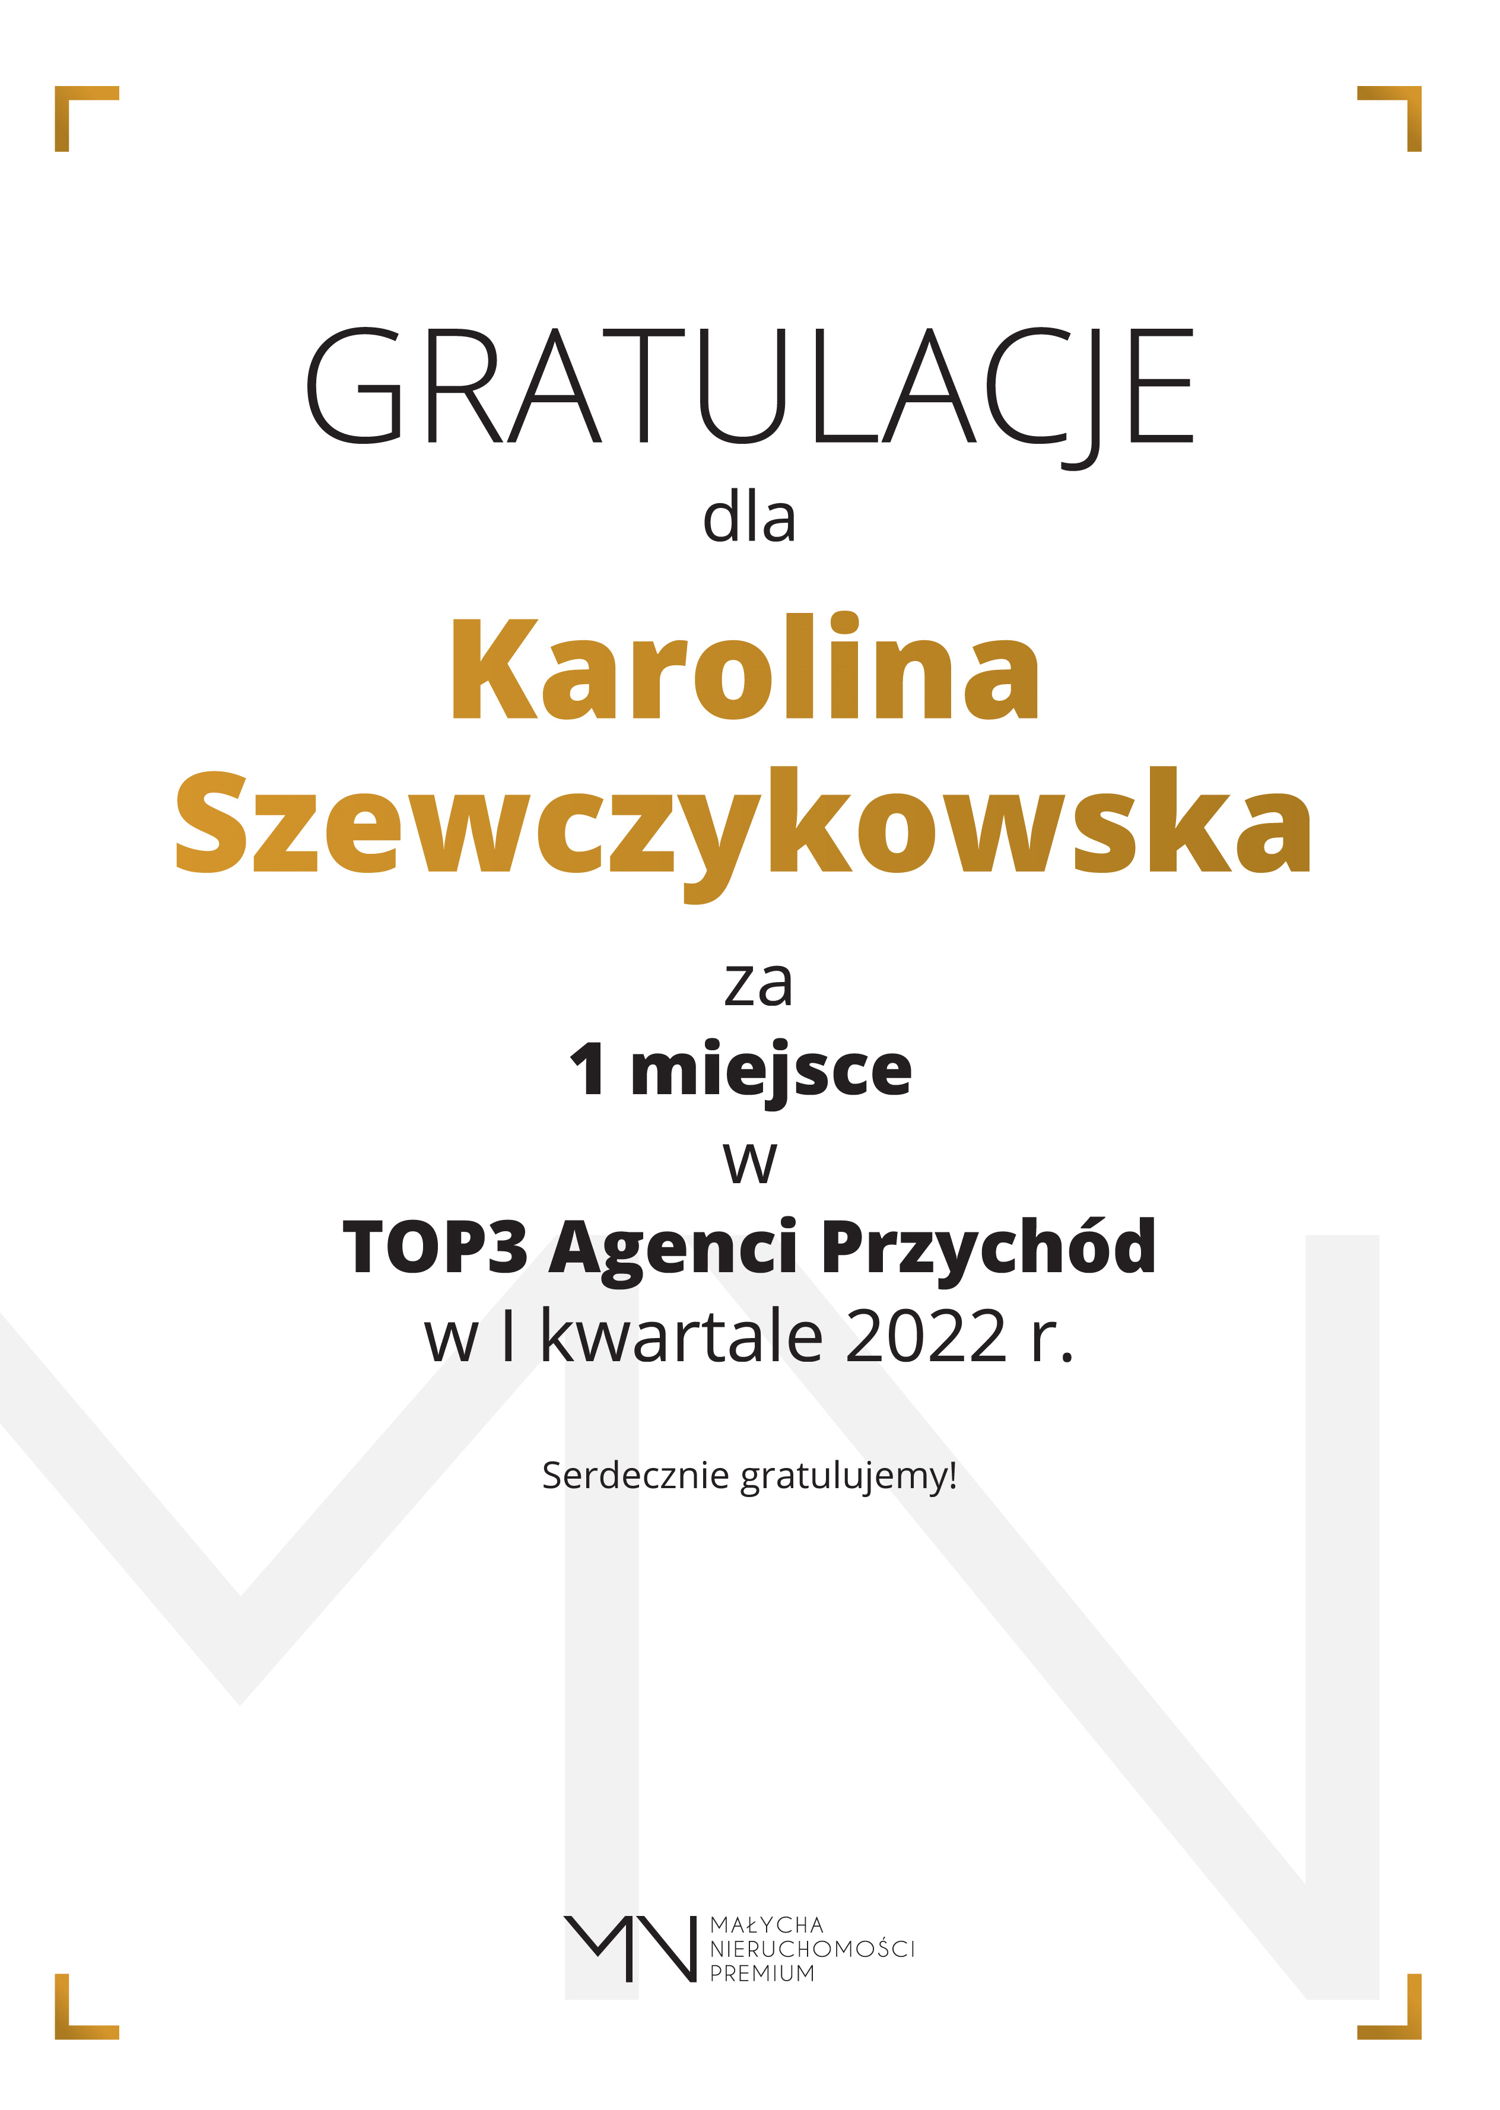 Karolina_Szewczykowska_TOP3_Agenci_Przychod-01